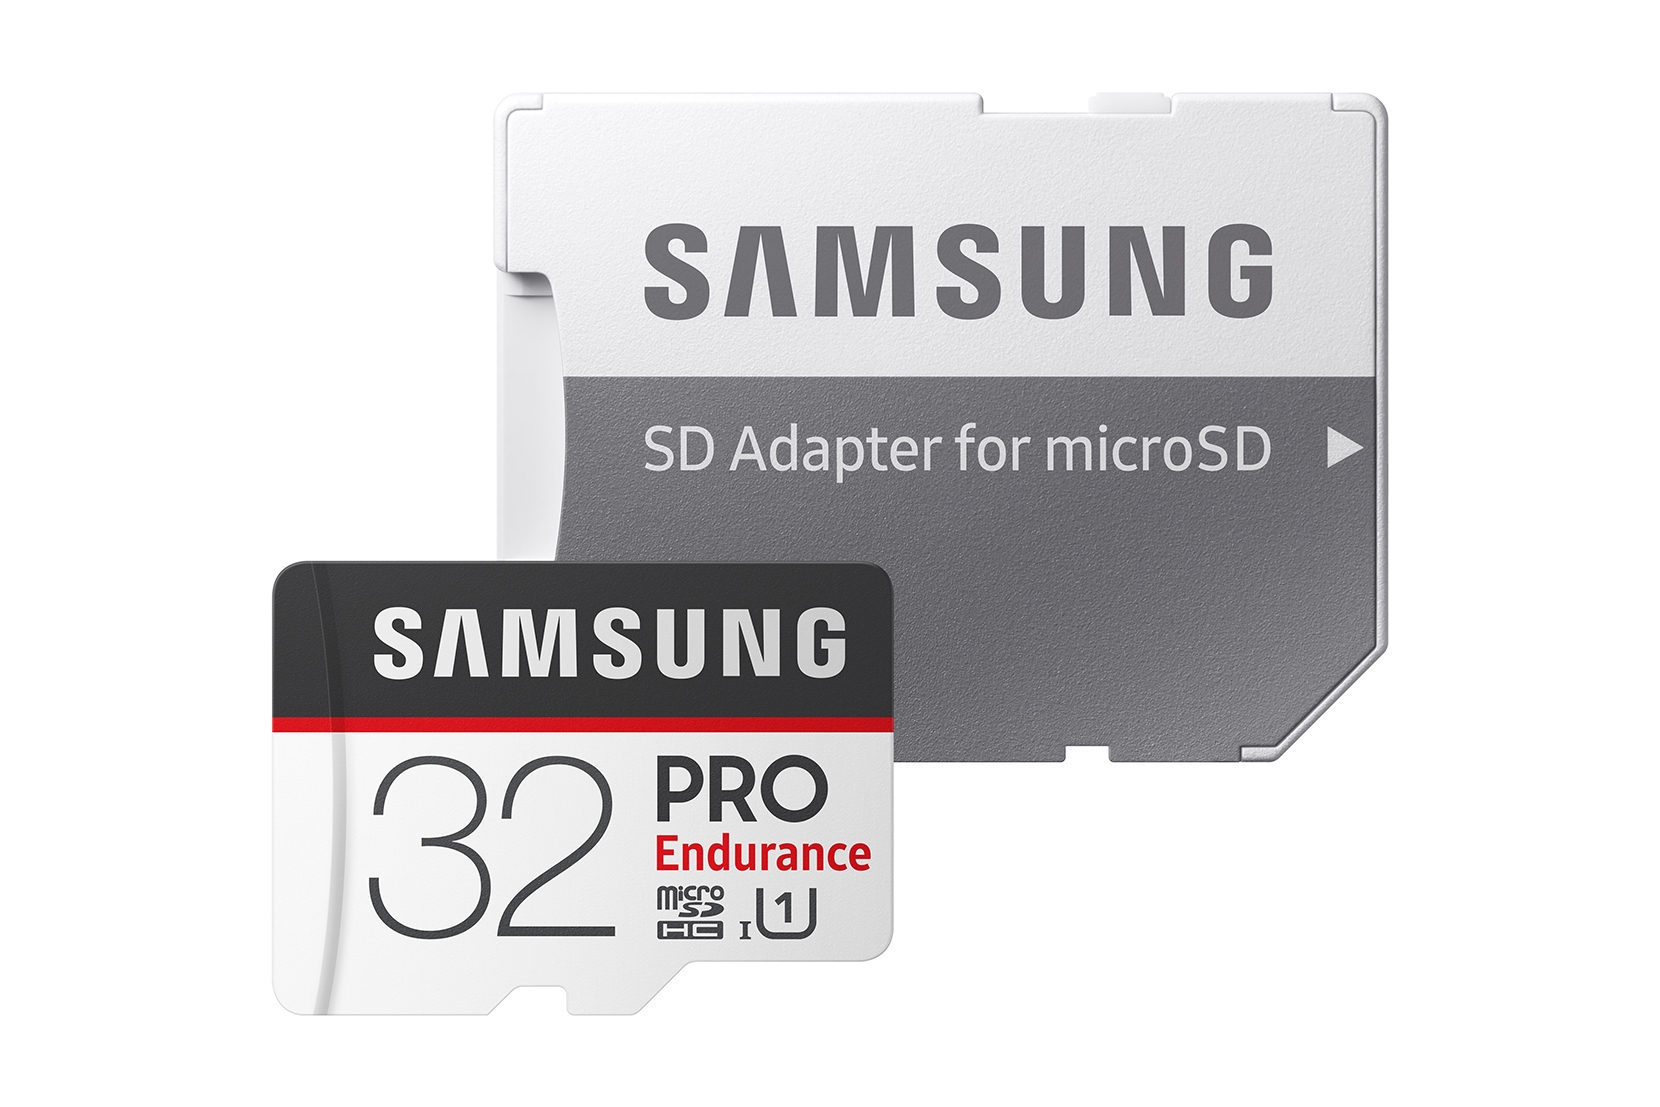 Samsung PRO Endurance - Micro SDHC 32Go V30 - Carte mémoire